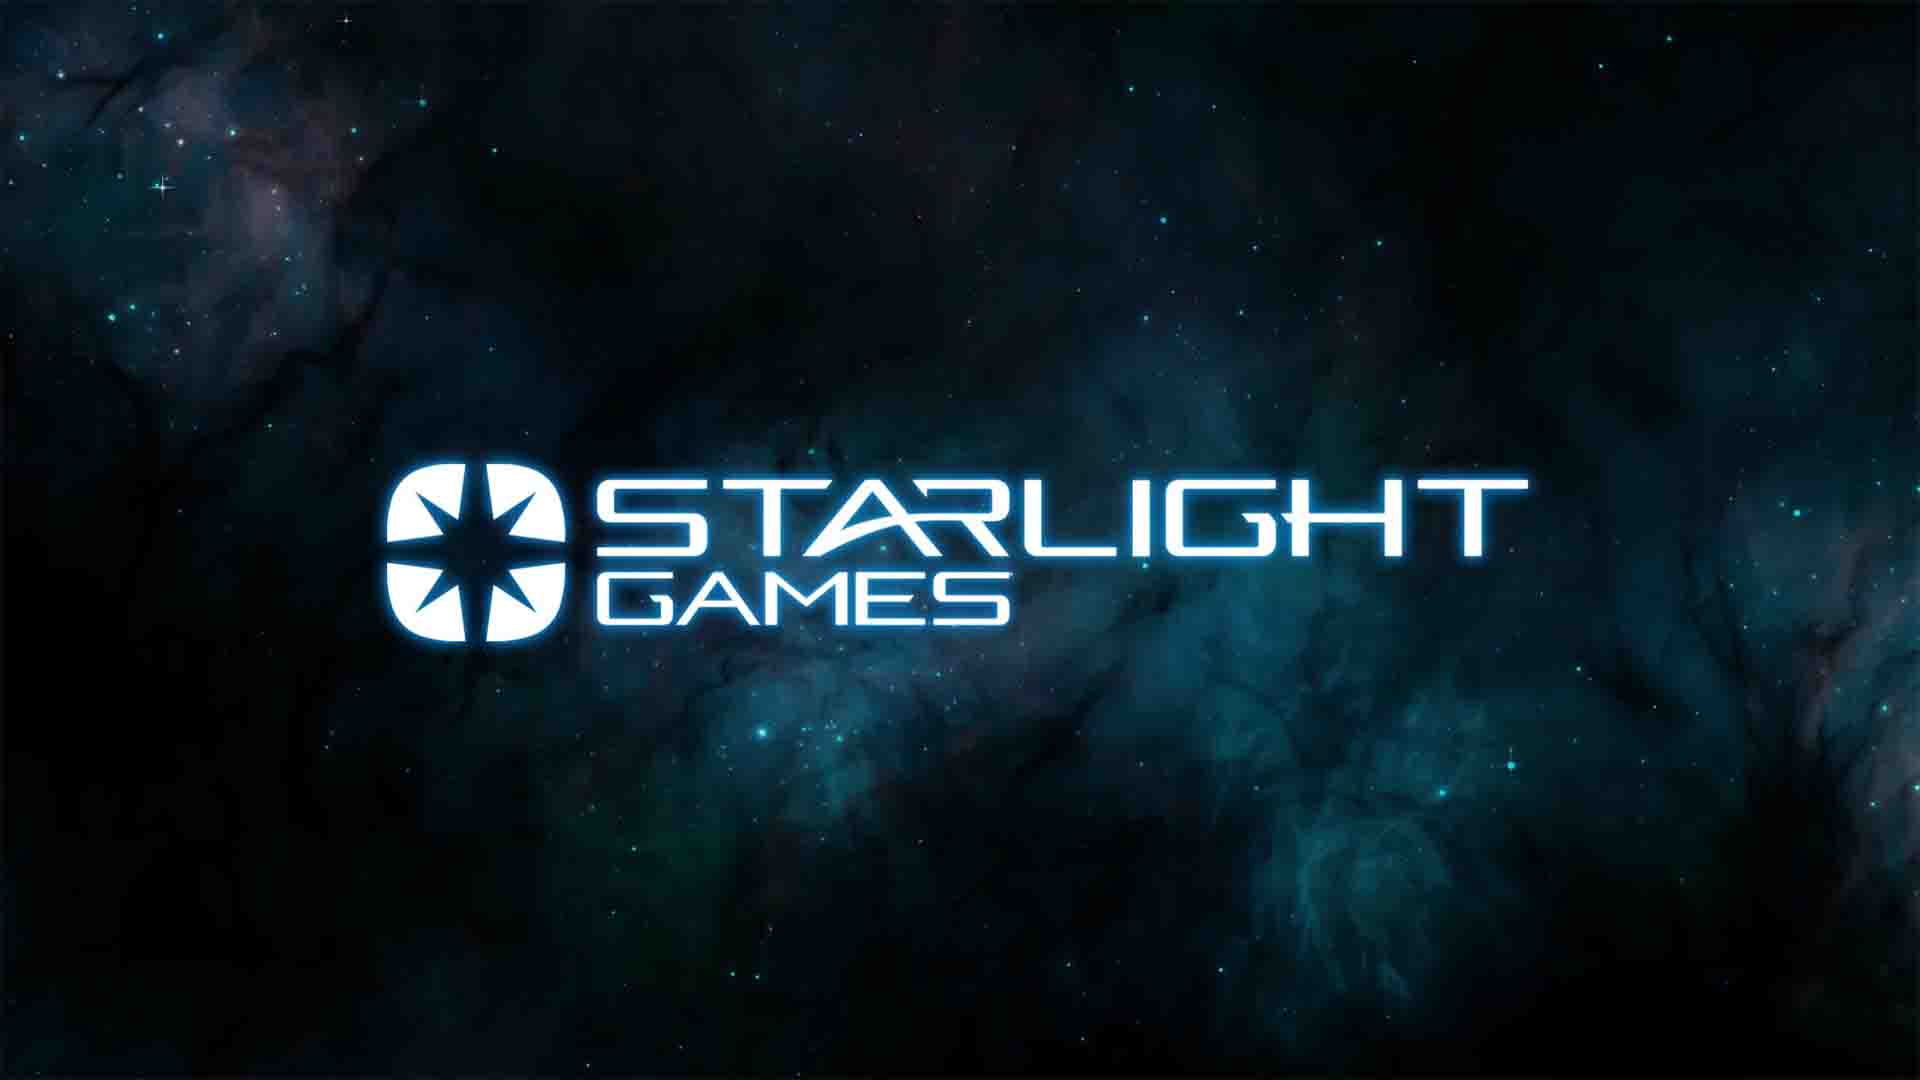 Starlight Games — новая студия, в которую входят бывшие члены команды Psygnosis, анонсировано три игры